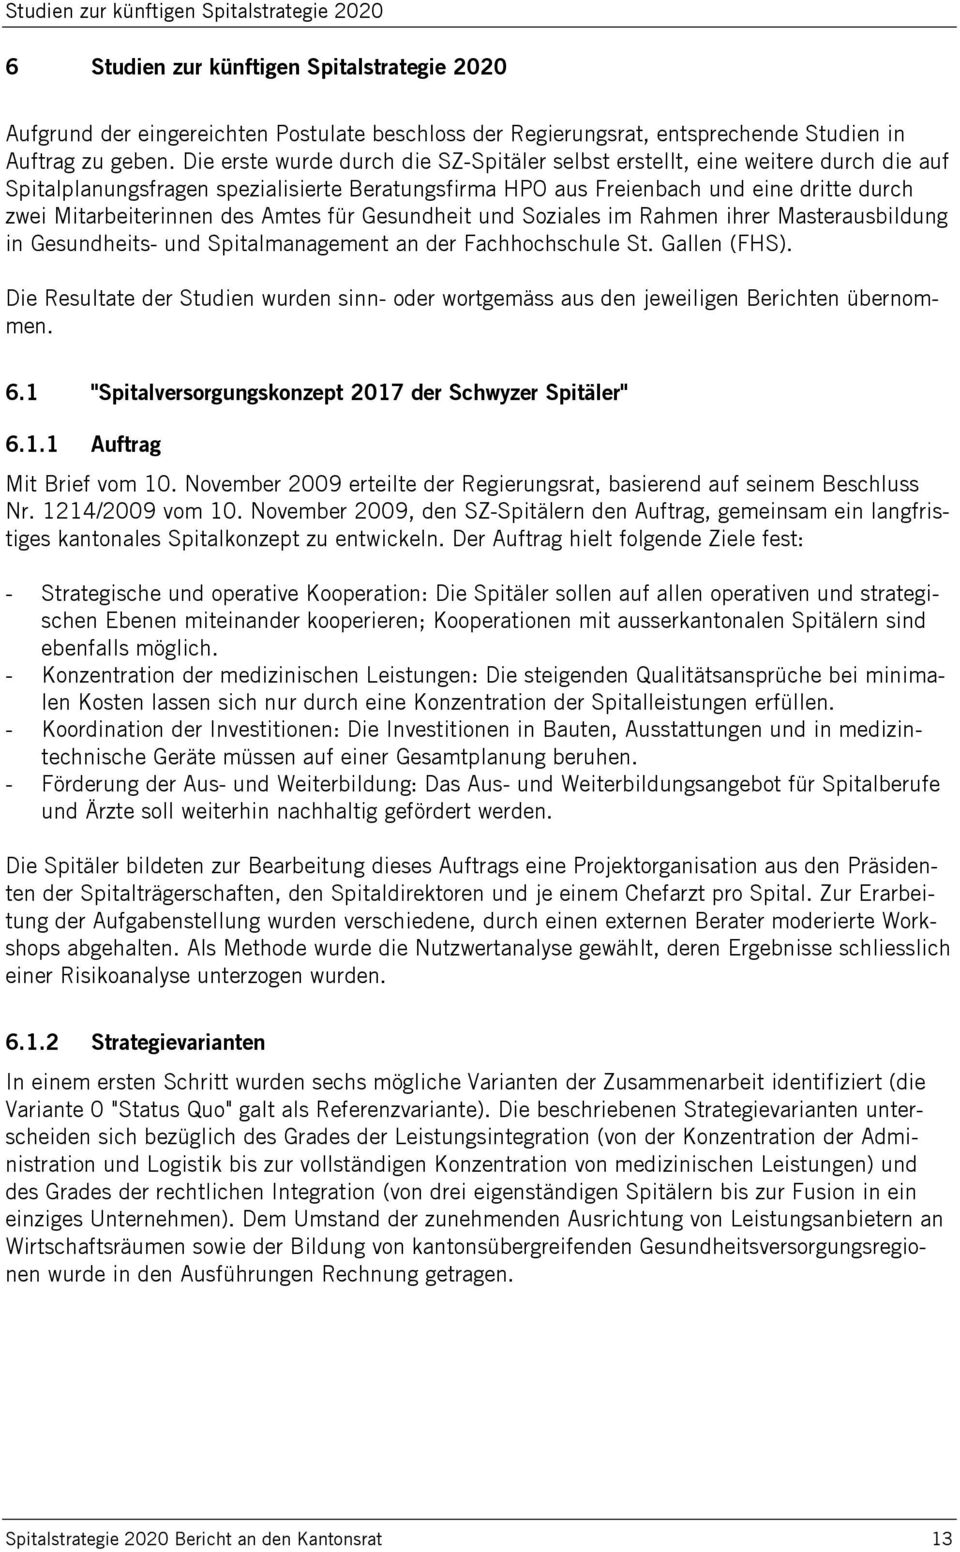 Amtes für Gesundheit und Soziales im Rahmen ihrer Masterausbildung in Gesundheits- und Spitalmanagement an der Fachhochschule St. Gallen (FHS).